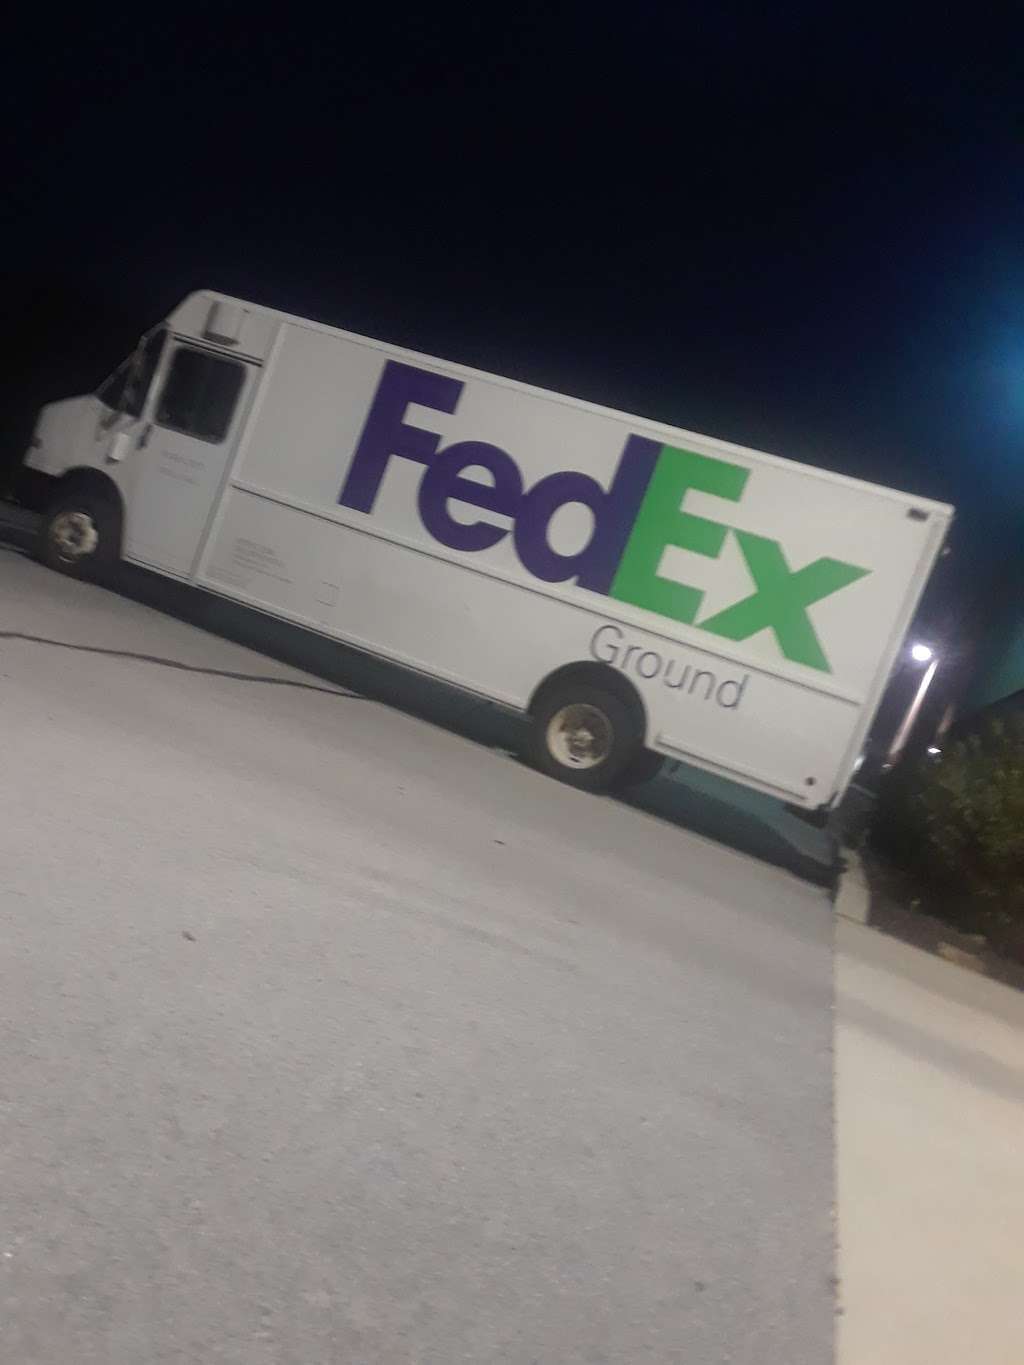 FedEx Ground | 10301 Bennett Pkwy, Zionsville, IN 46077 | Phone: (800) 463-3339